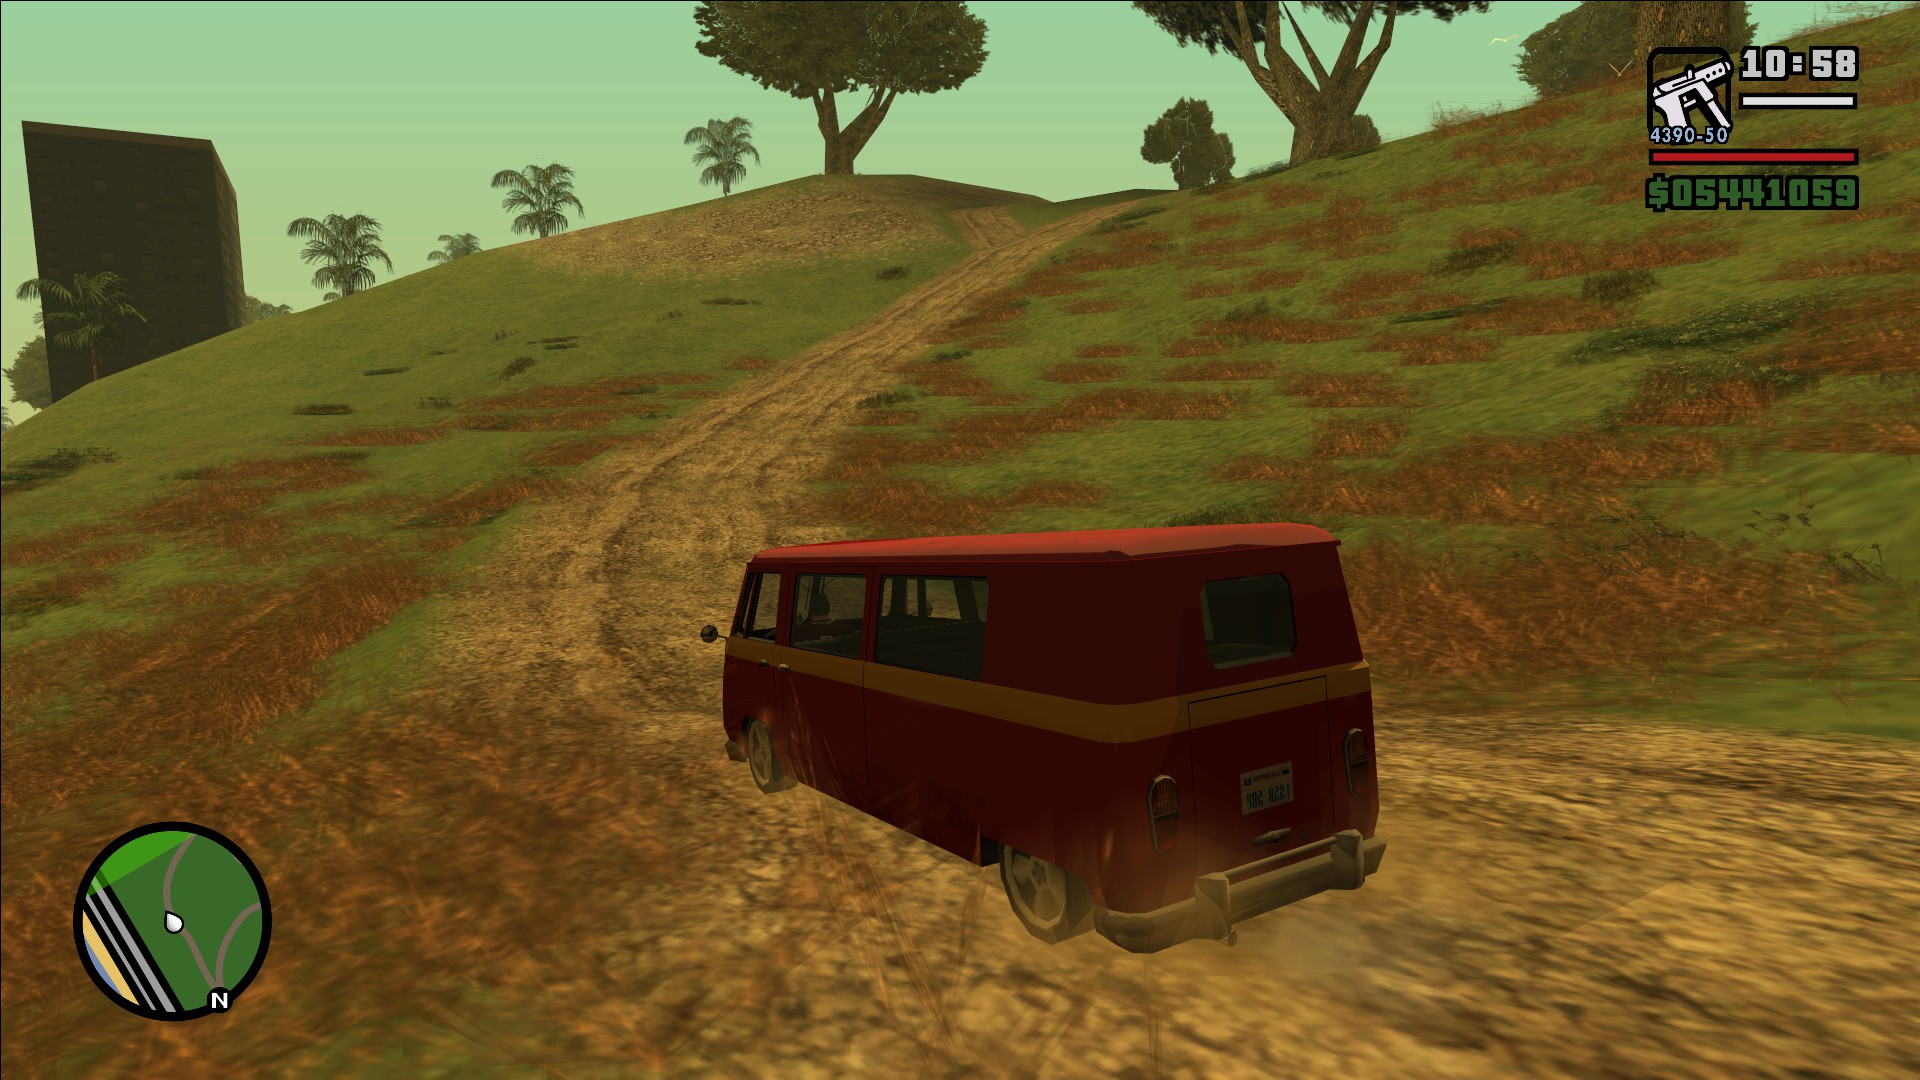 Real Cars For GTA-SA mod for Grand Theft Auto: San Andreas - ModDB